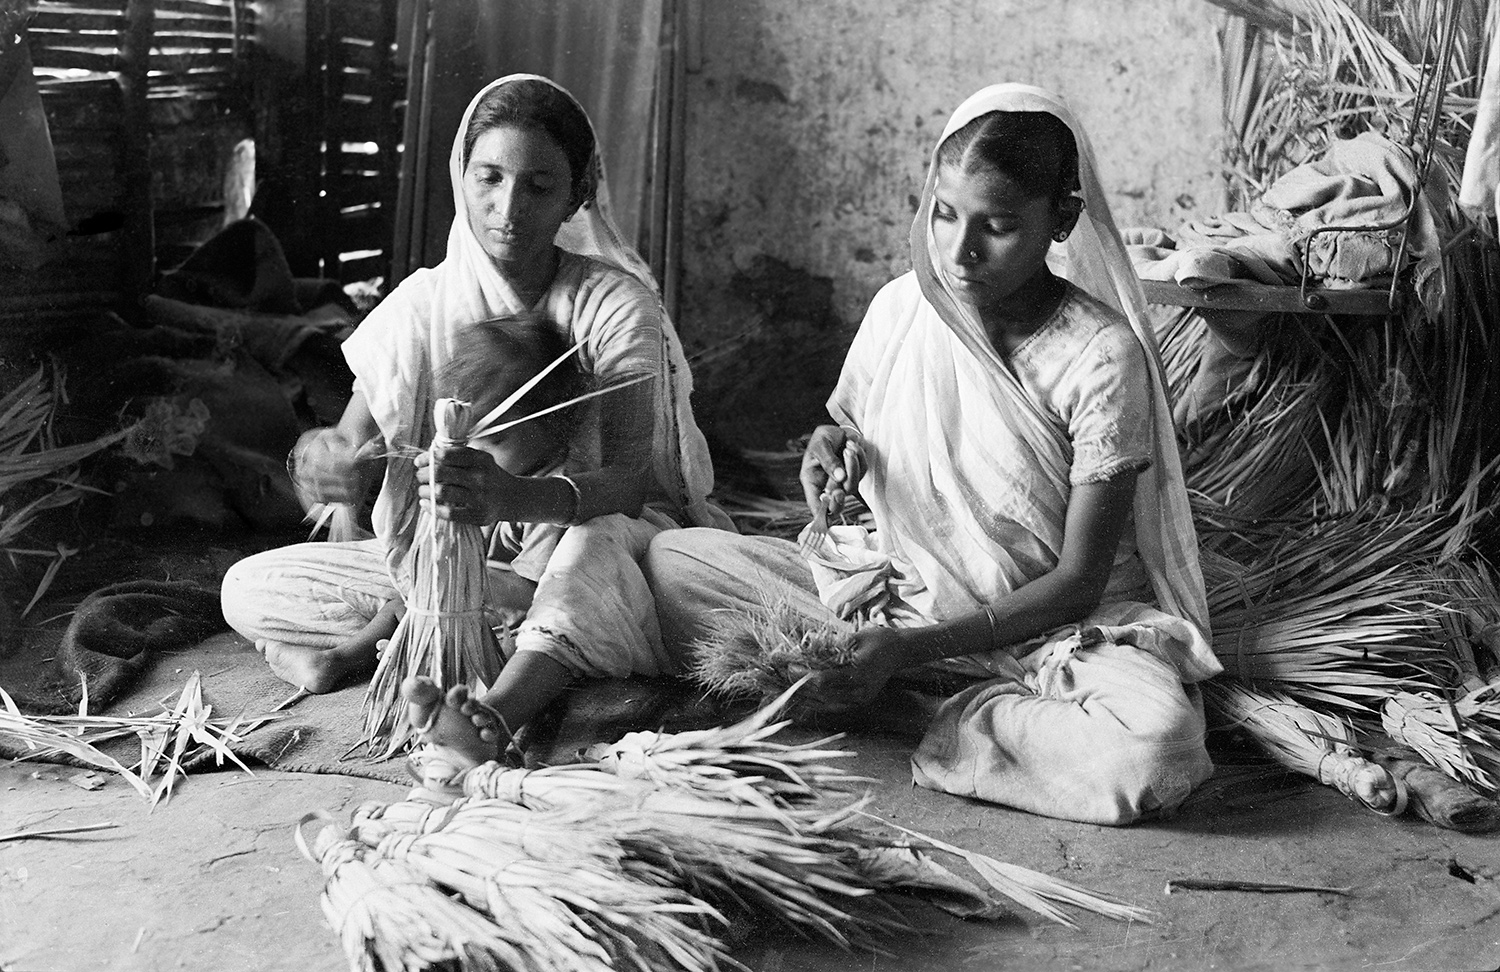 Indian working photos